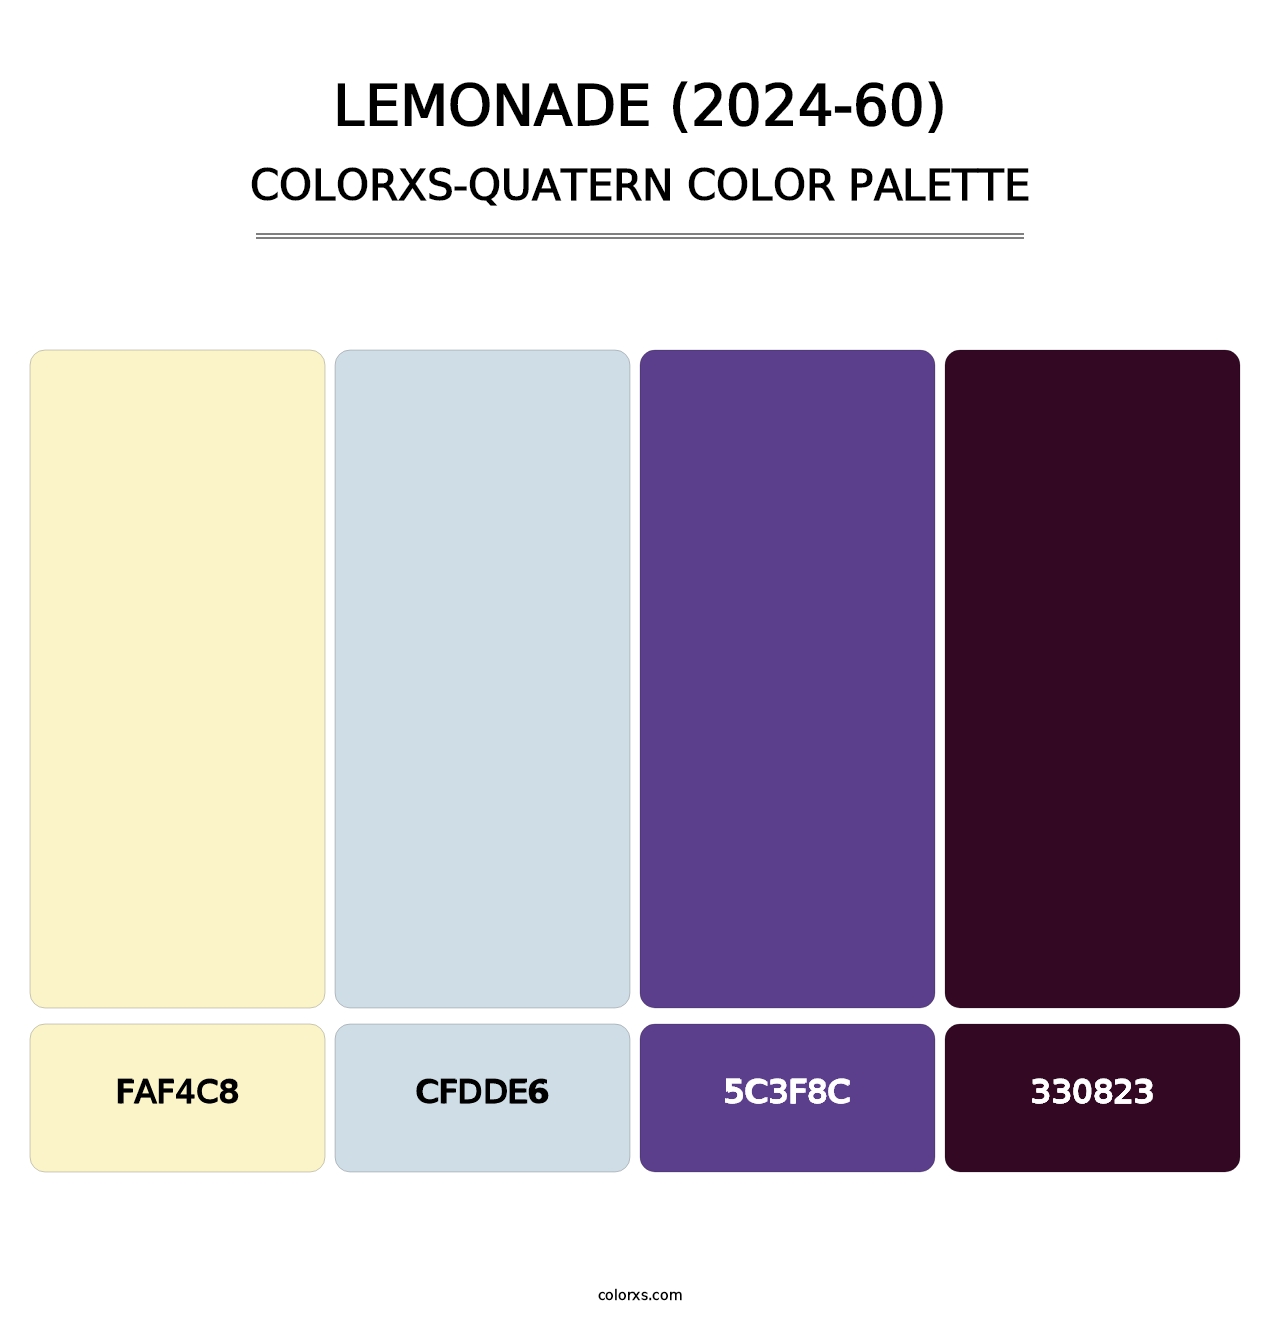 Lemonade (2024-60) - Colorxs Quatern Palette